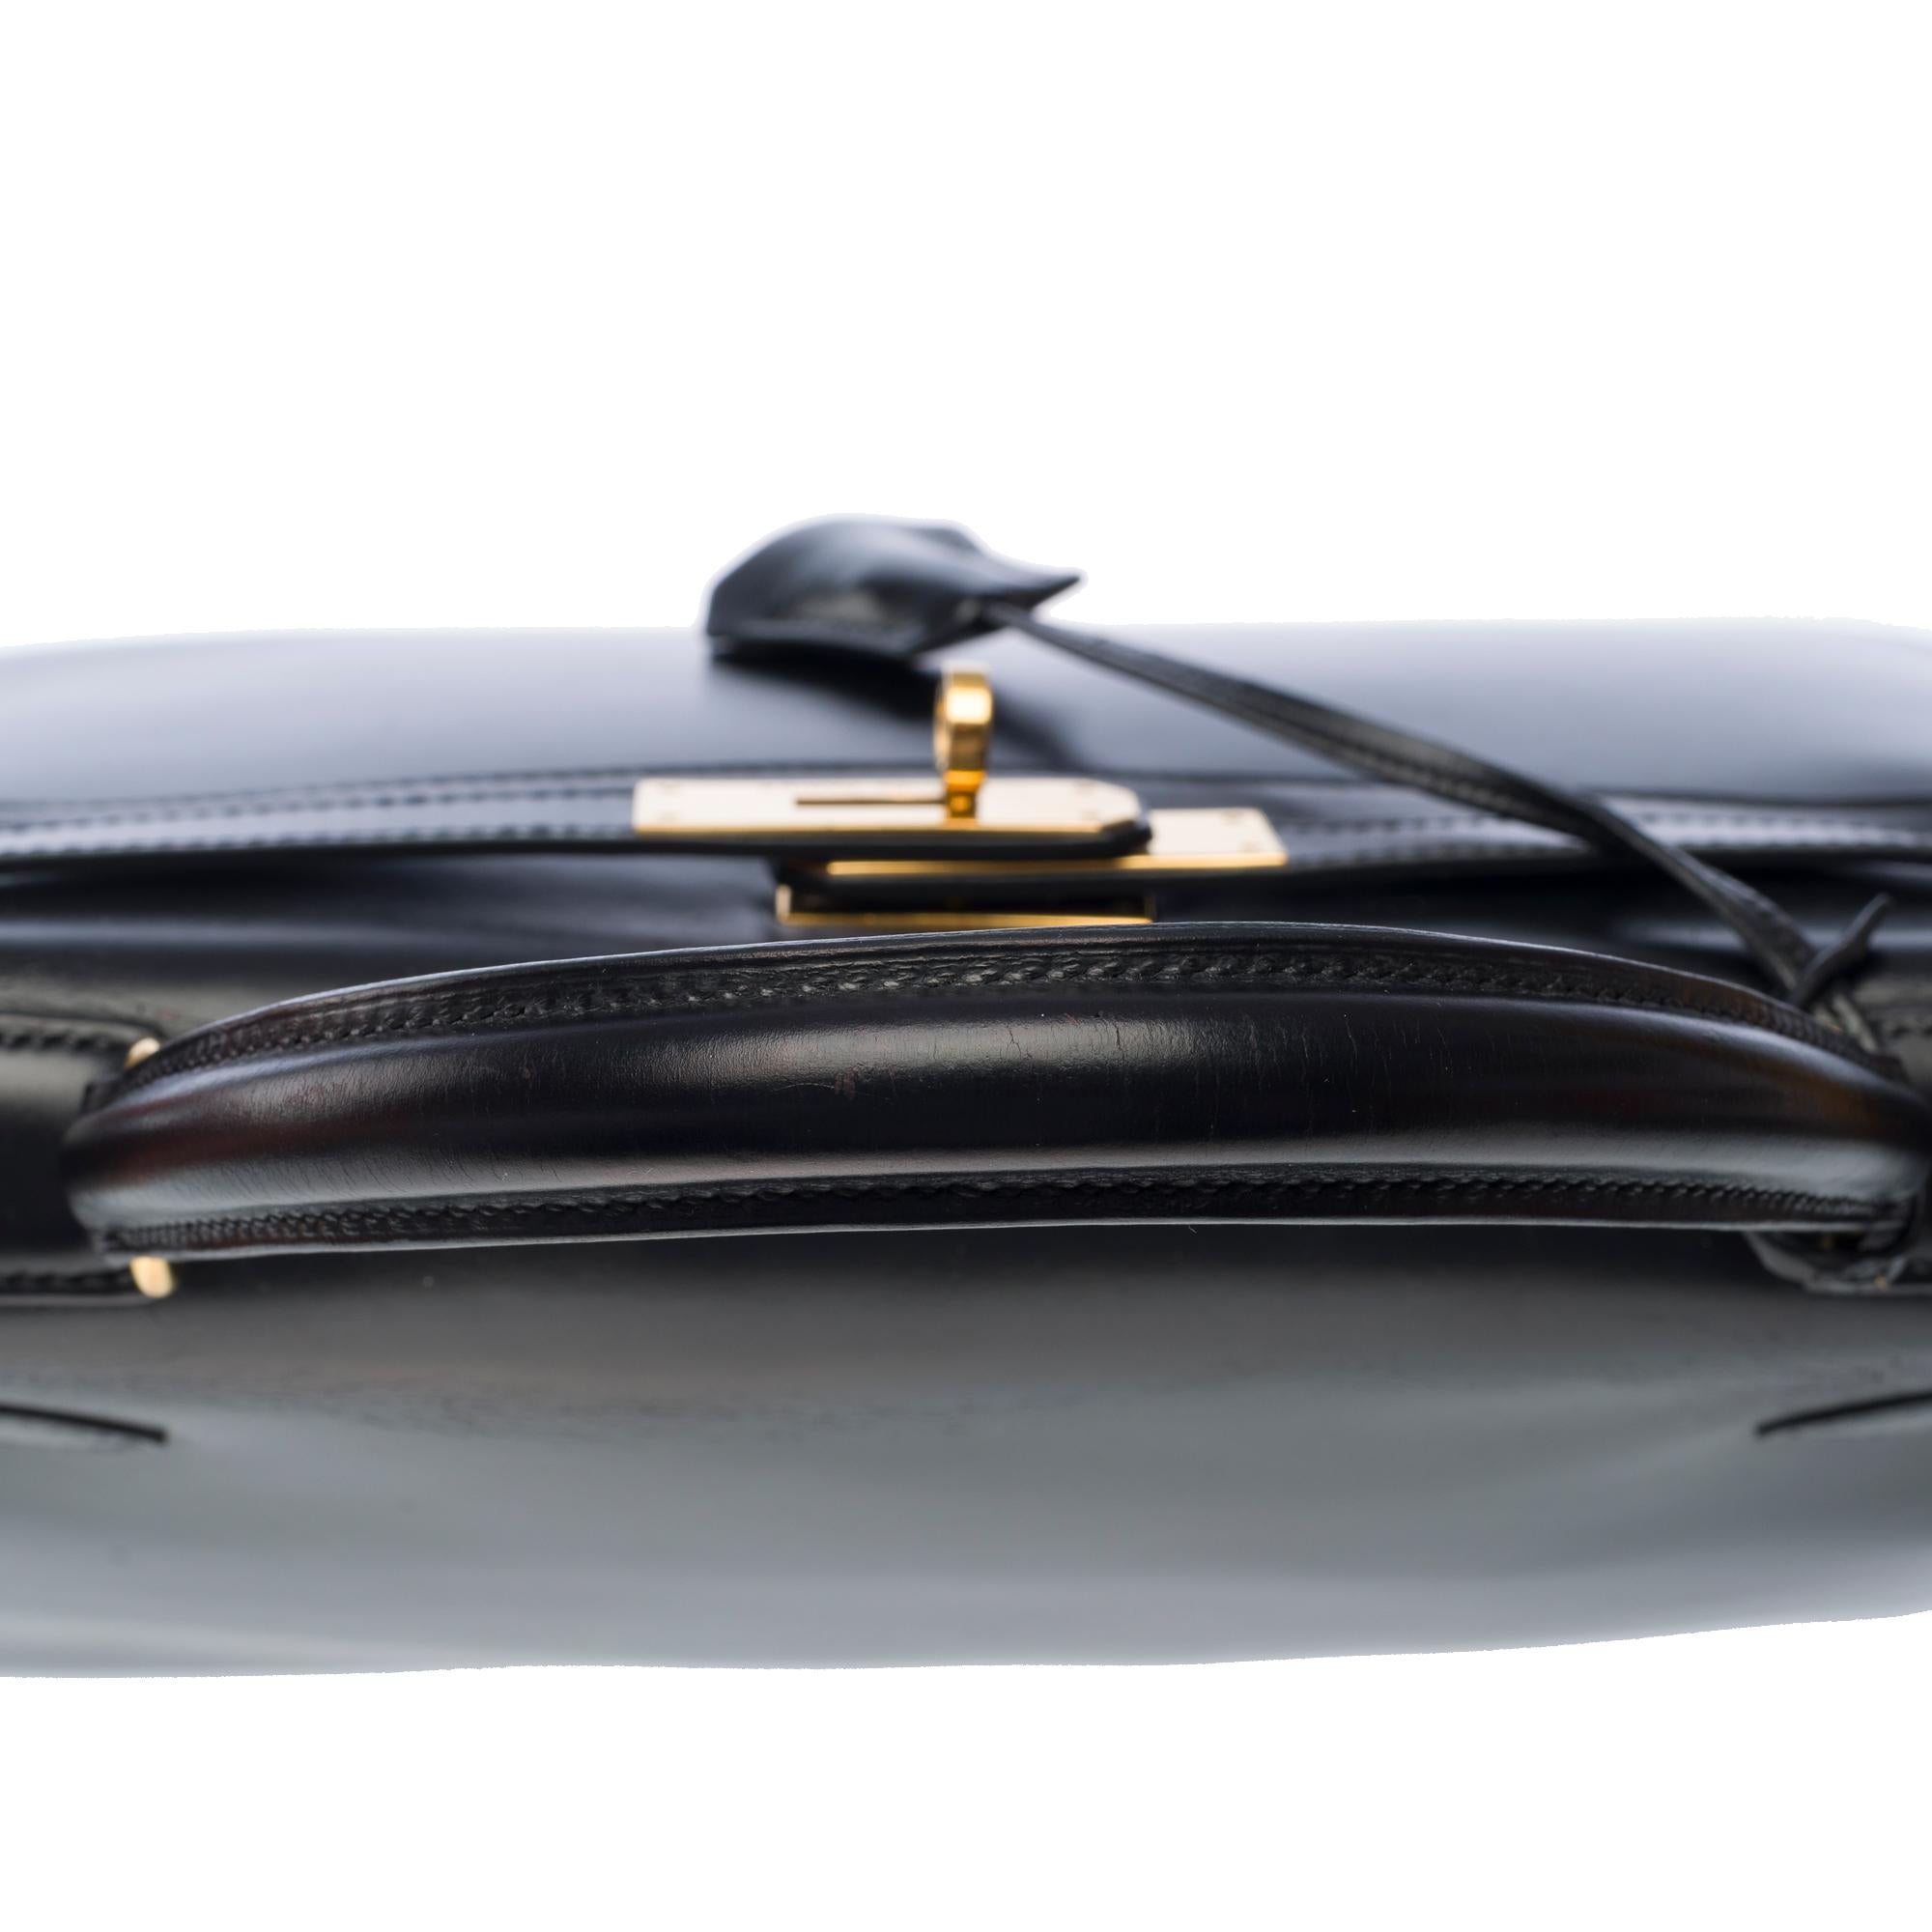 Hermes Kelly 28 sellier handbag in Black box calfskin leather, GHW For Sale 5